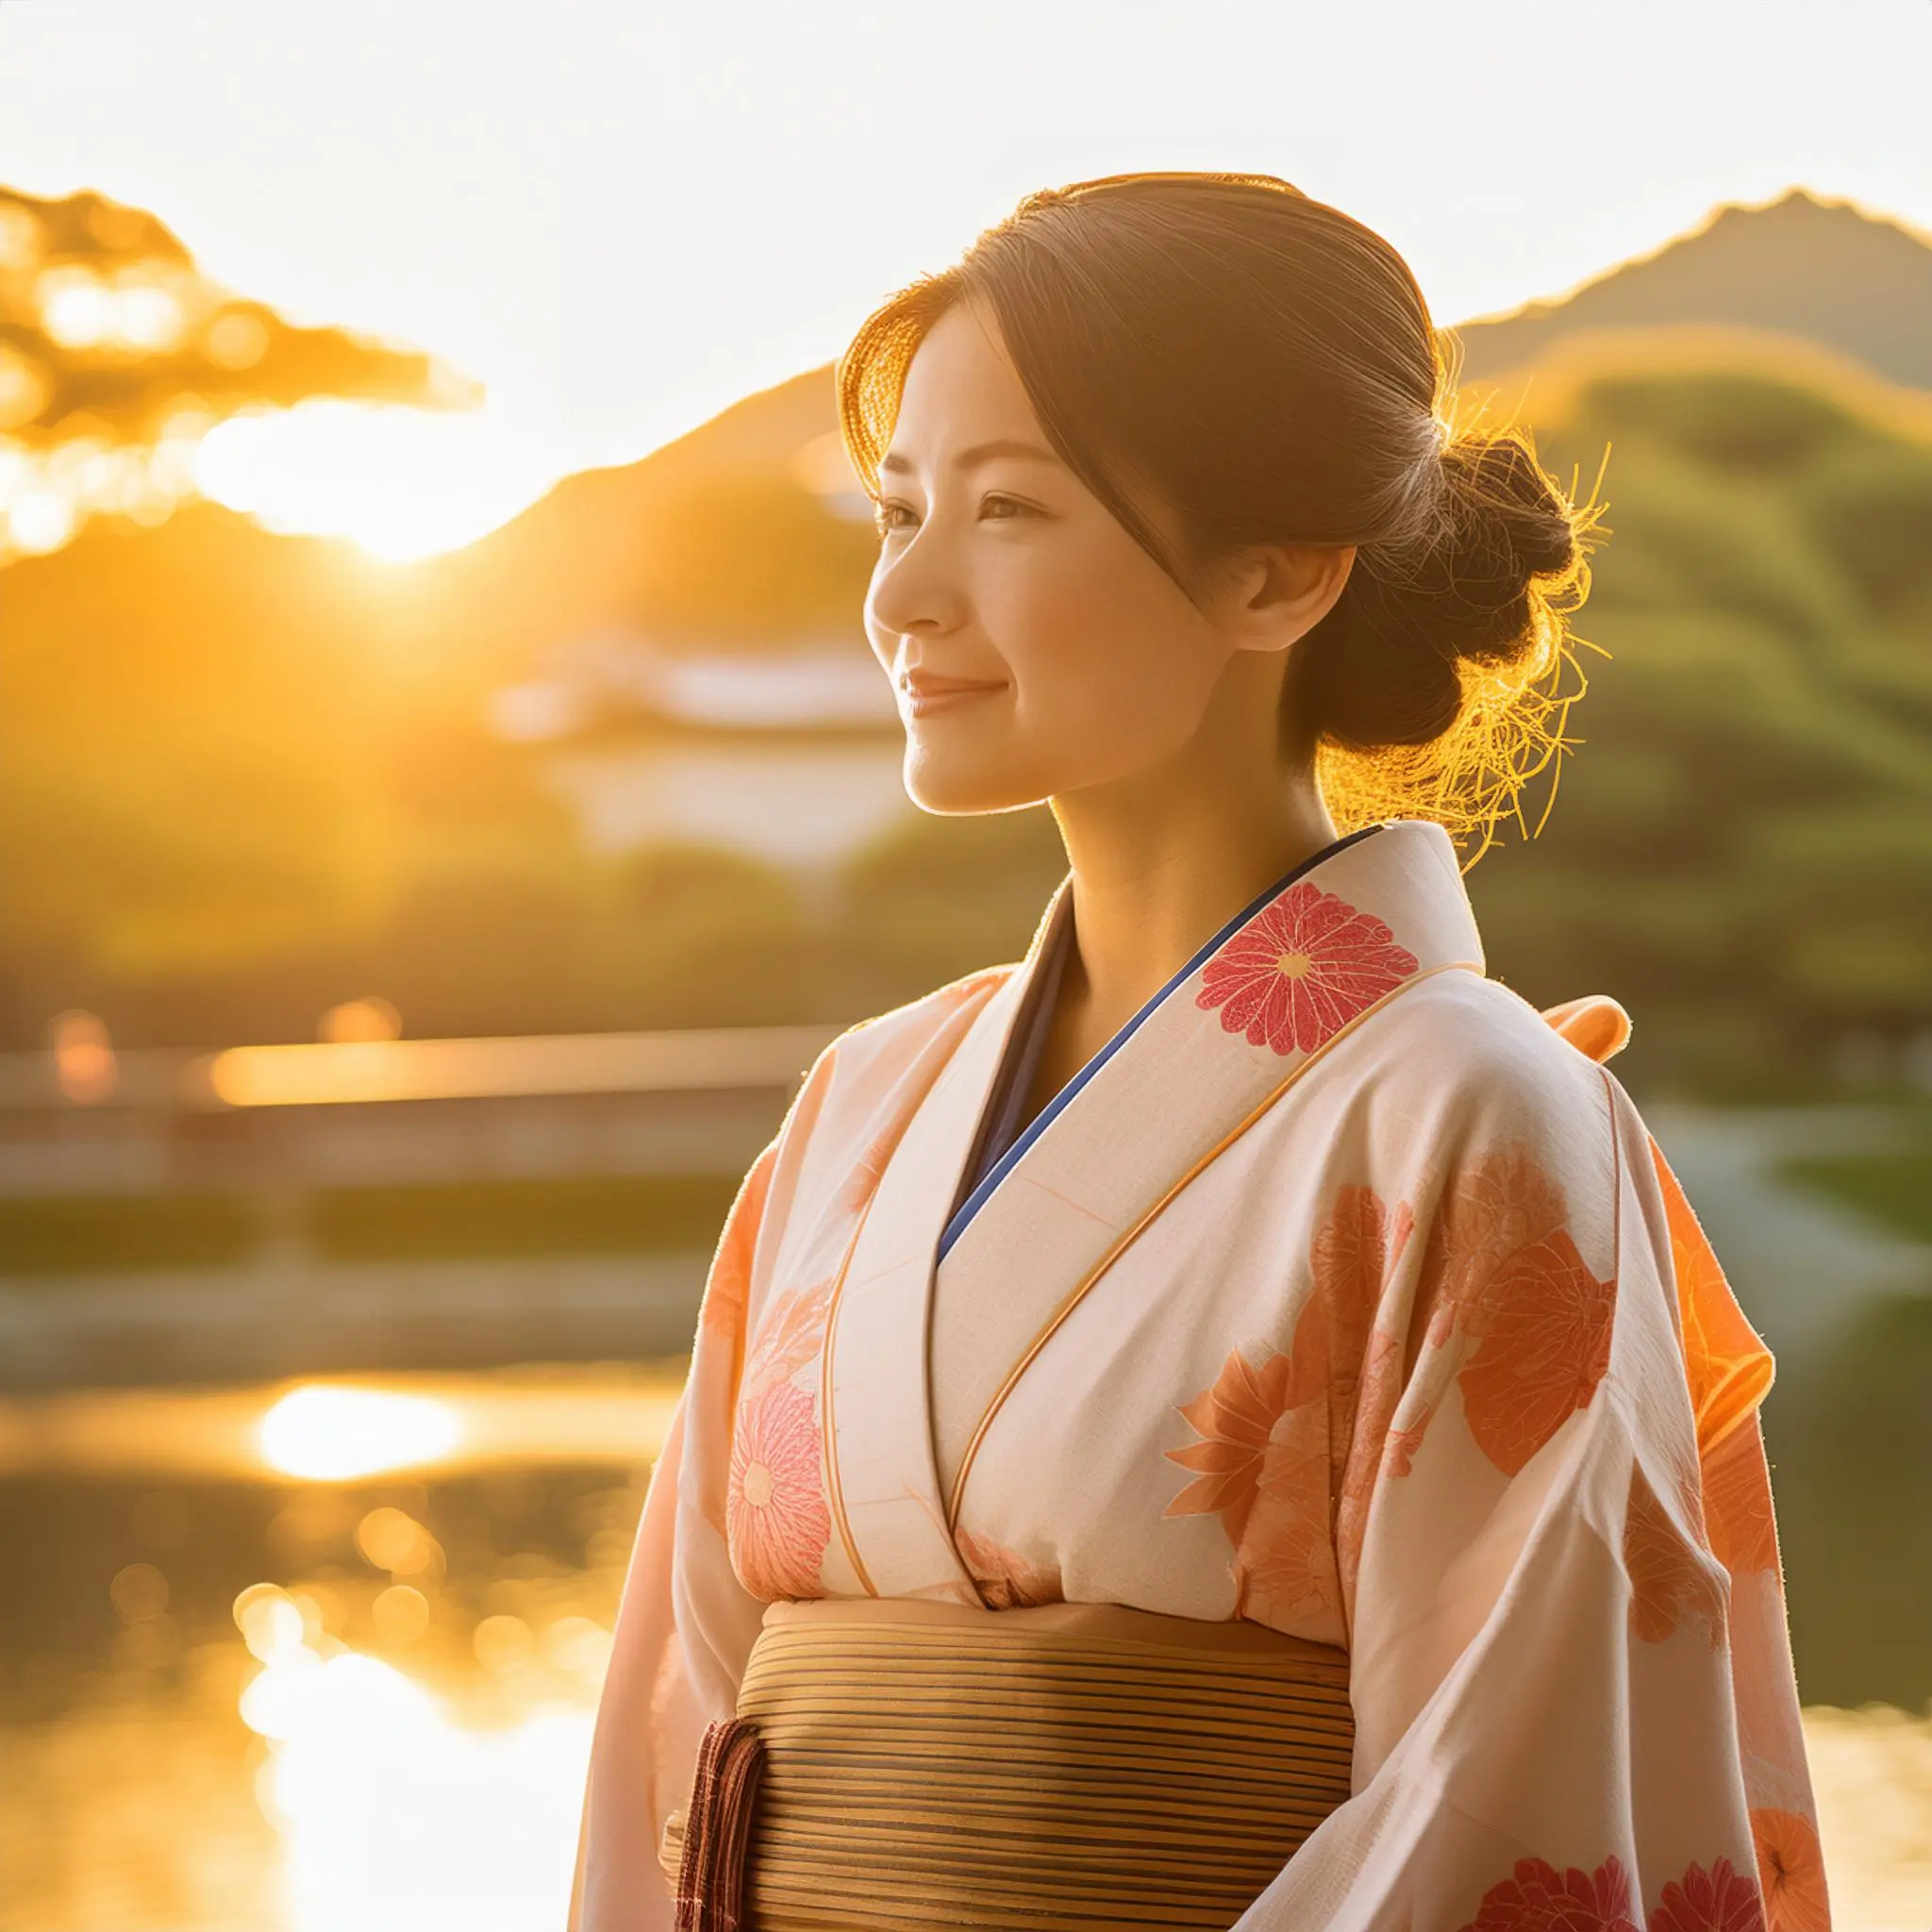 落ち着いた色味の着物を着た女性。京都。日本人。